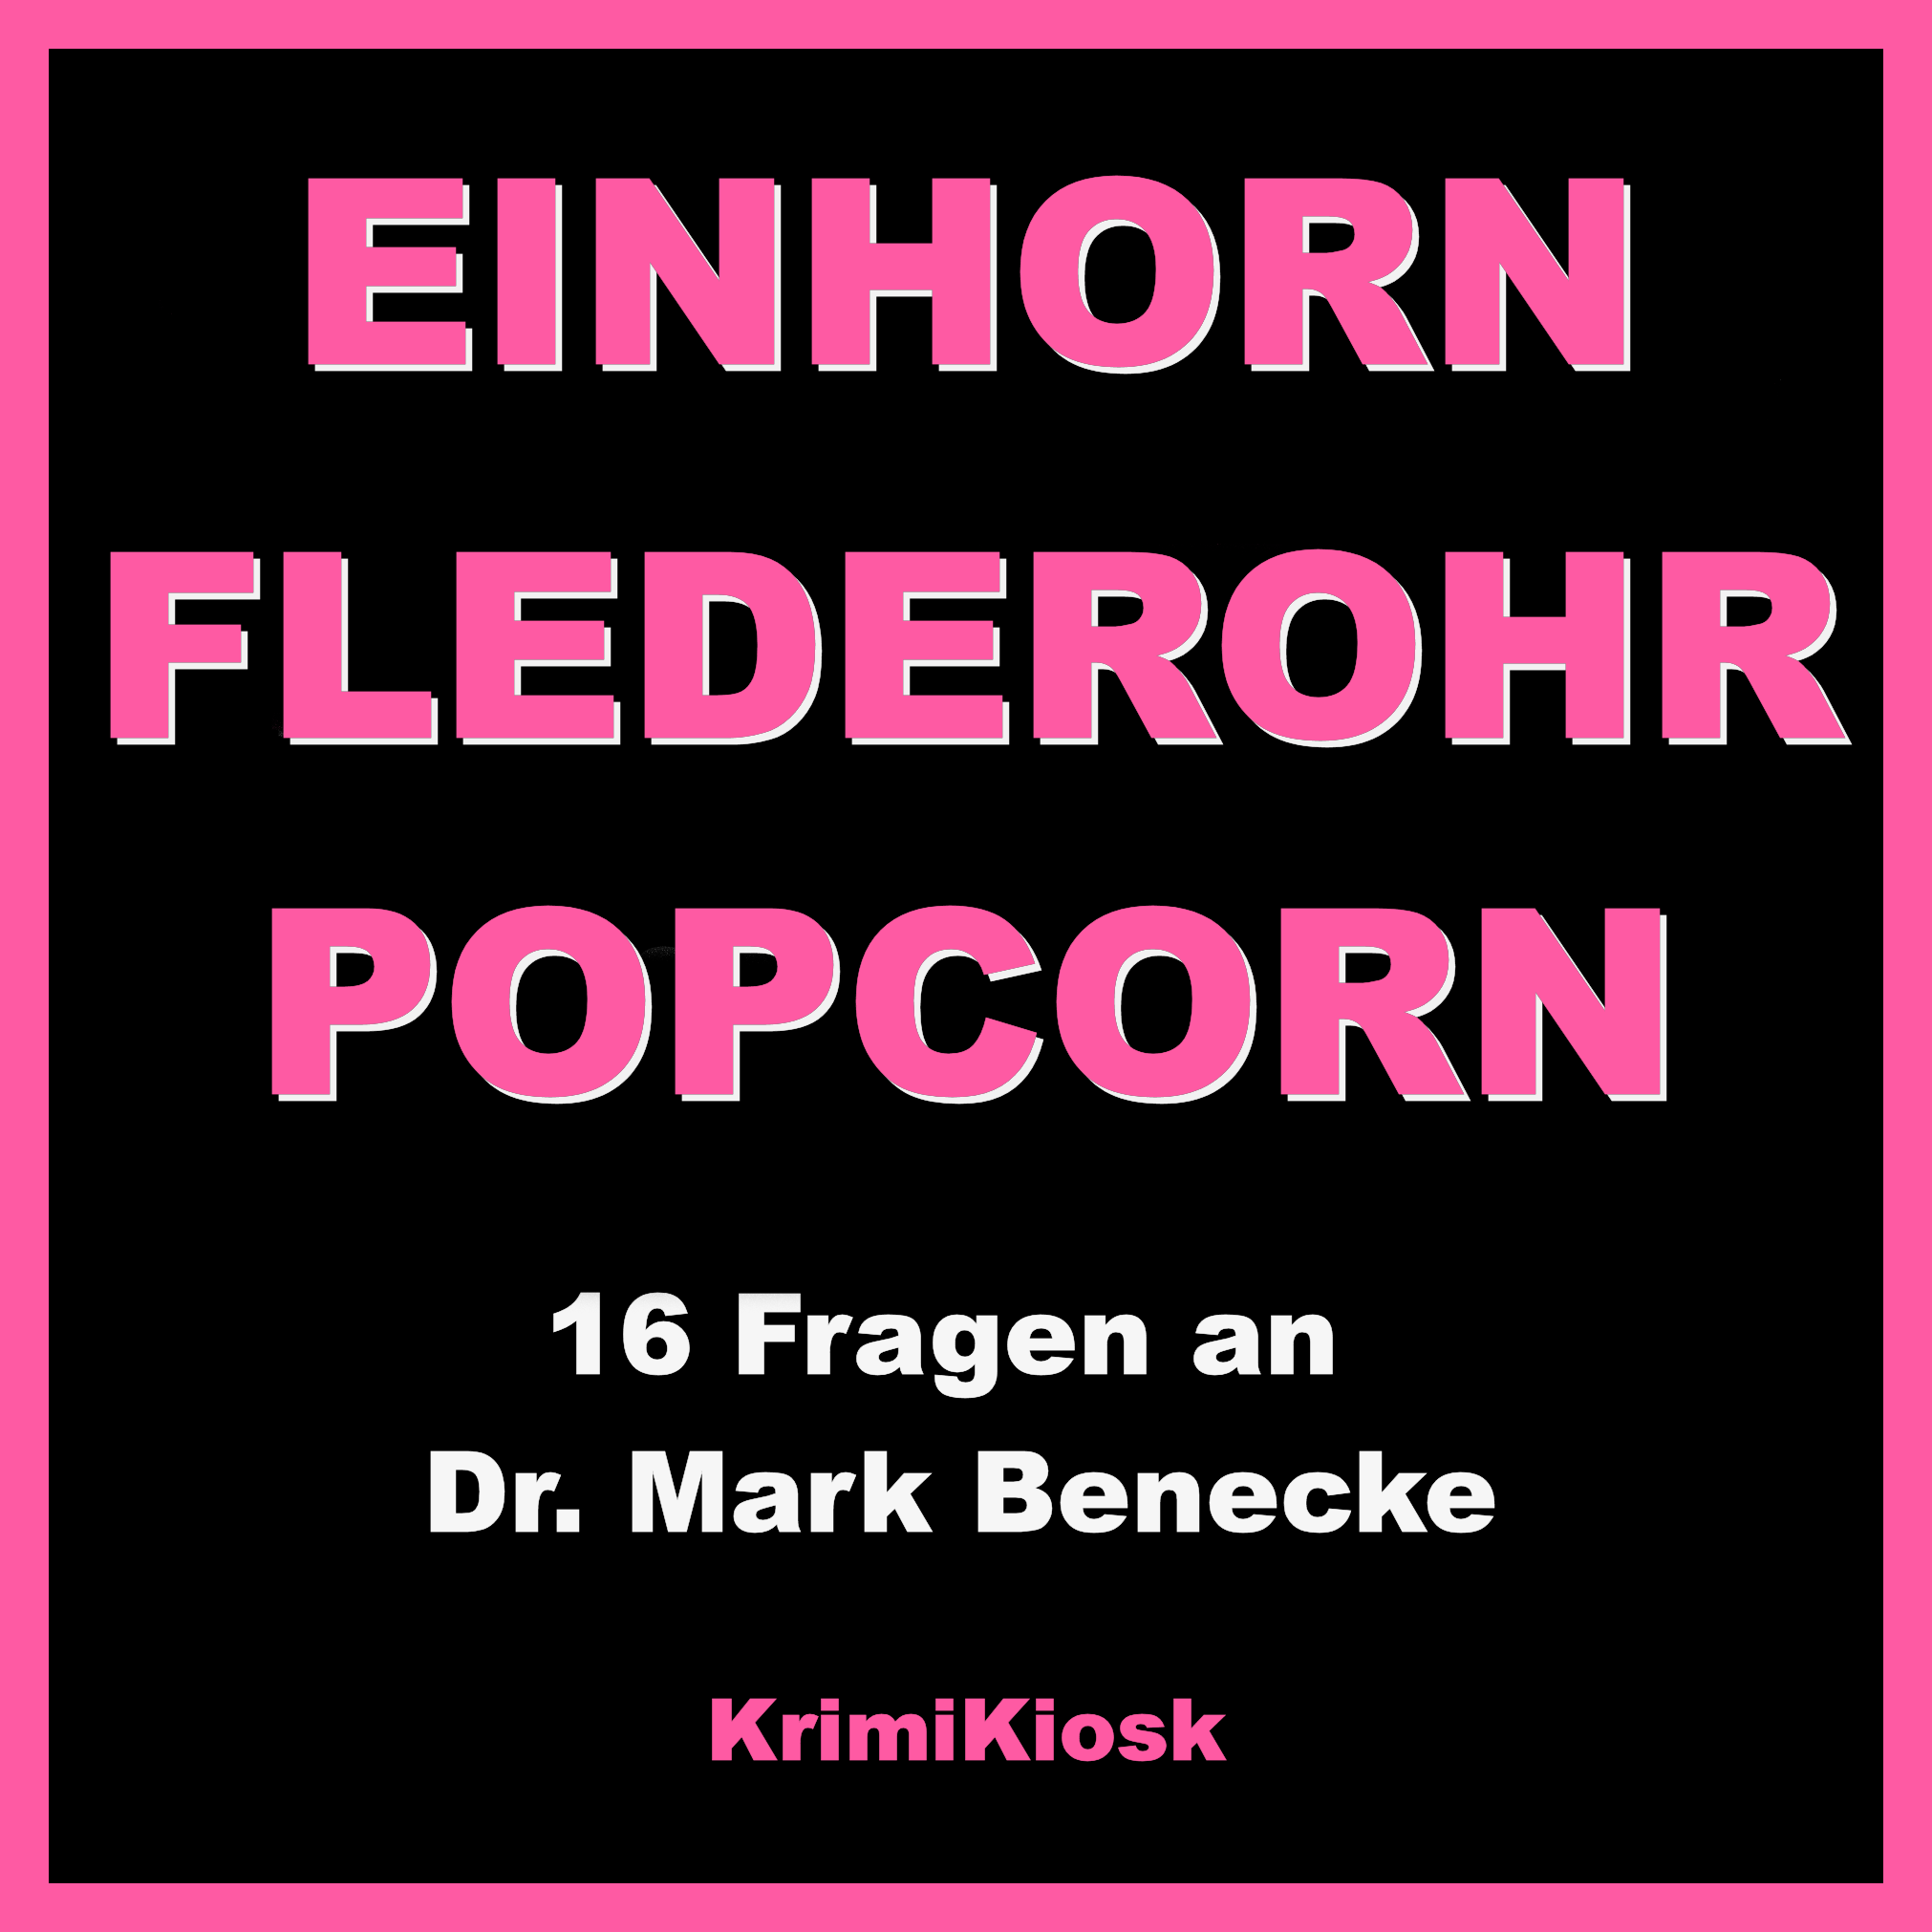 EINHORN, FLEDEROHR & POPCORN - Interview mit Dr. Mark Benecke